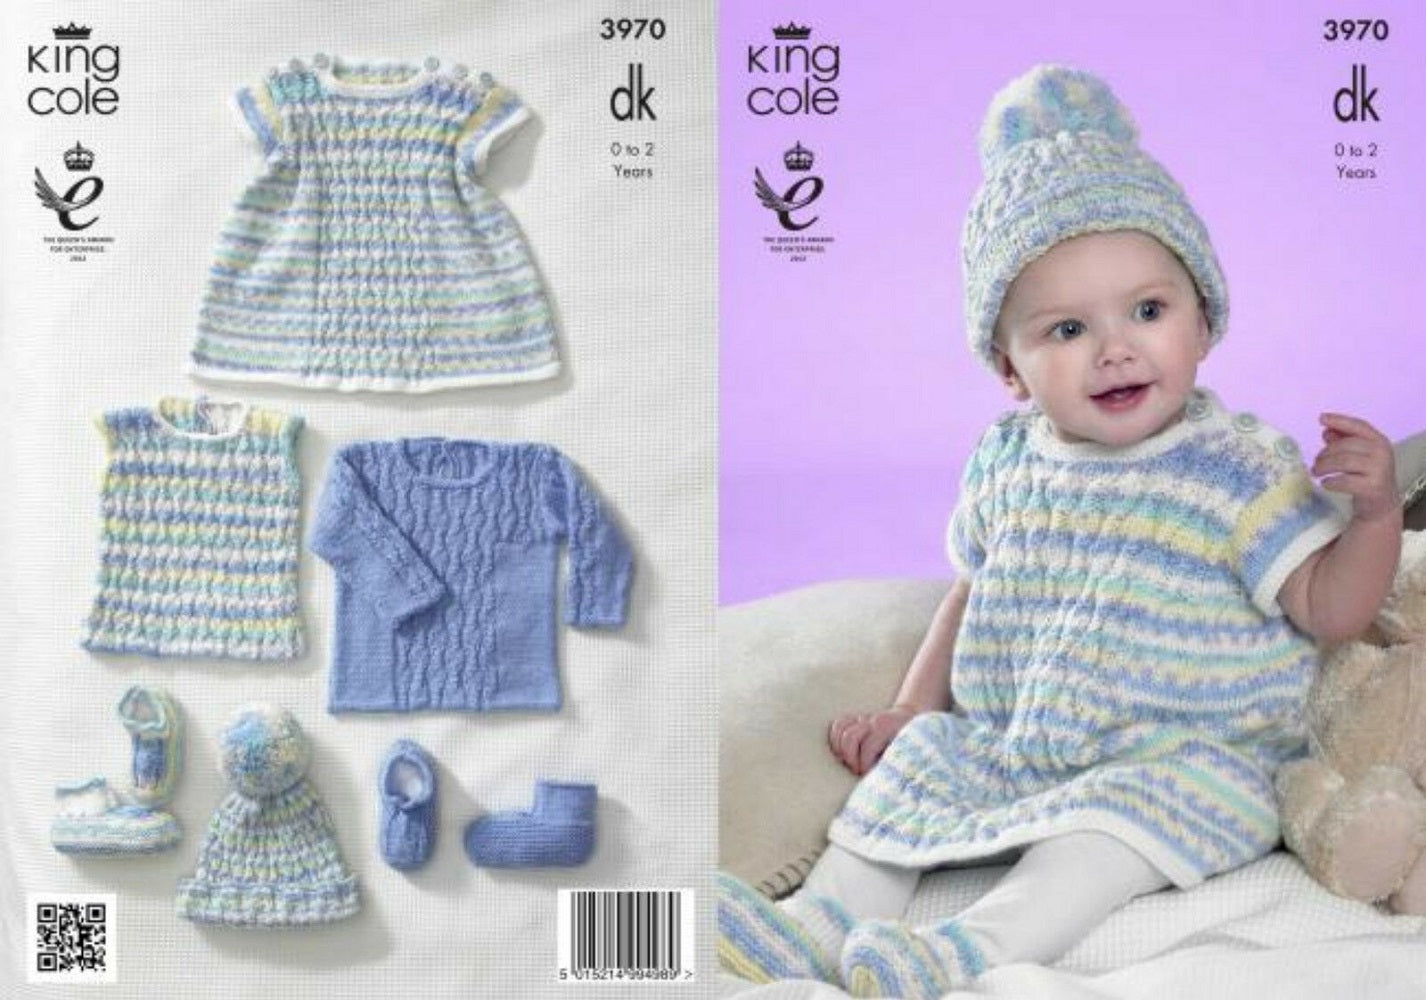 King Cole 3970 DK Baby Set Knitting Pattern